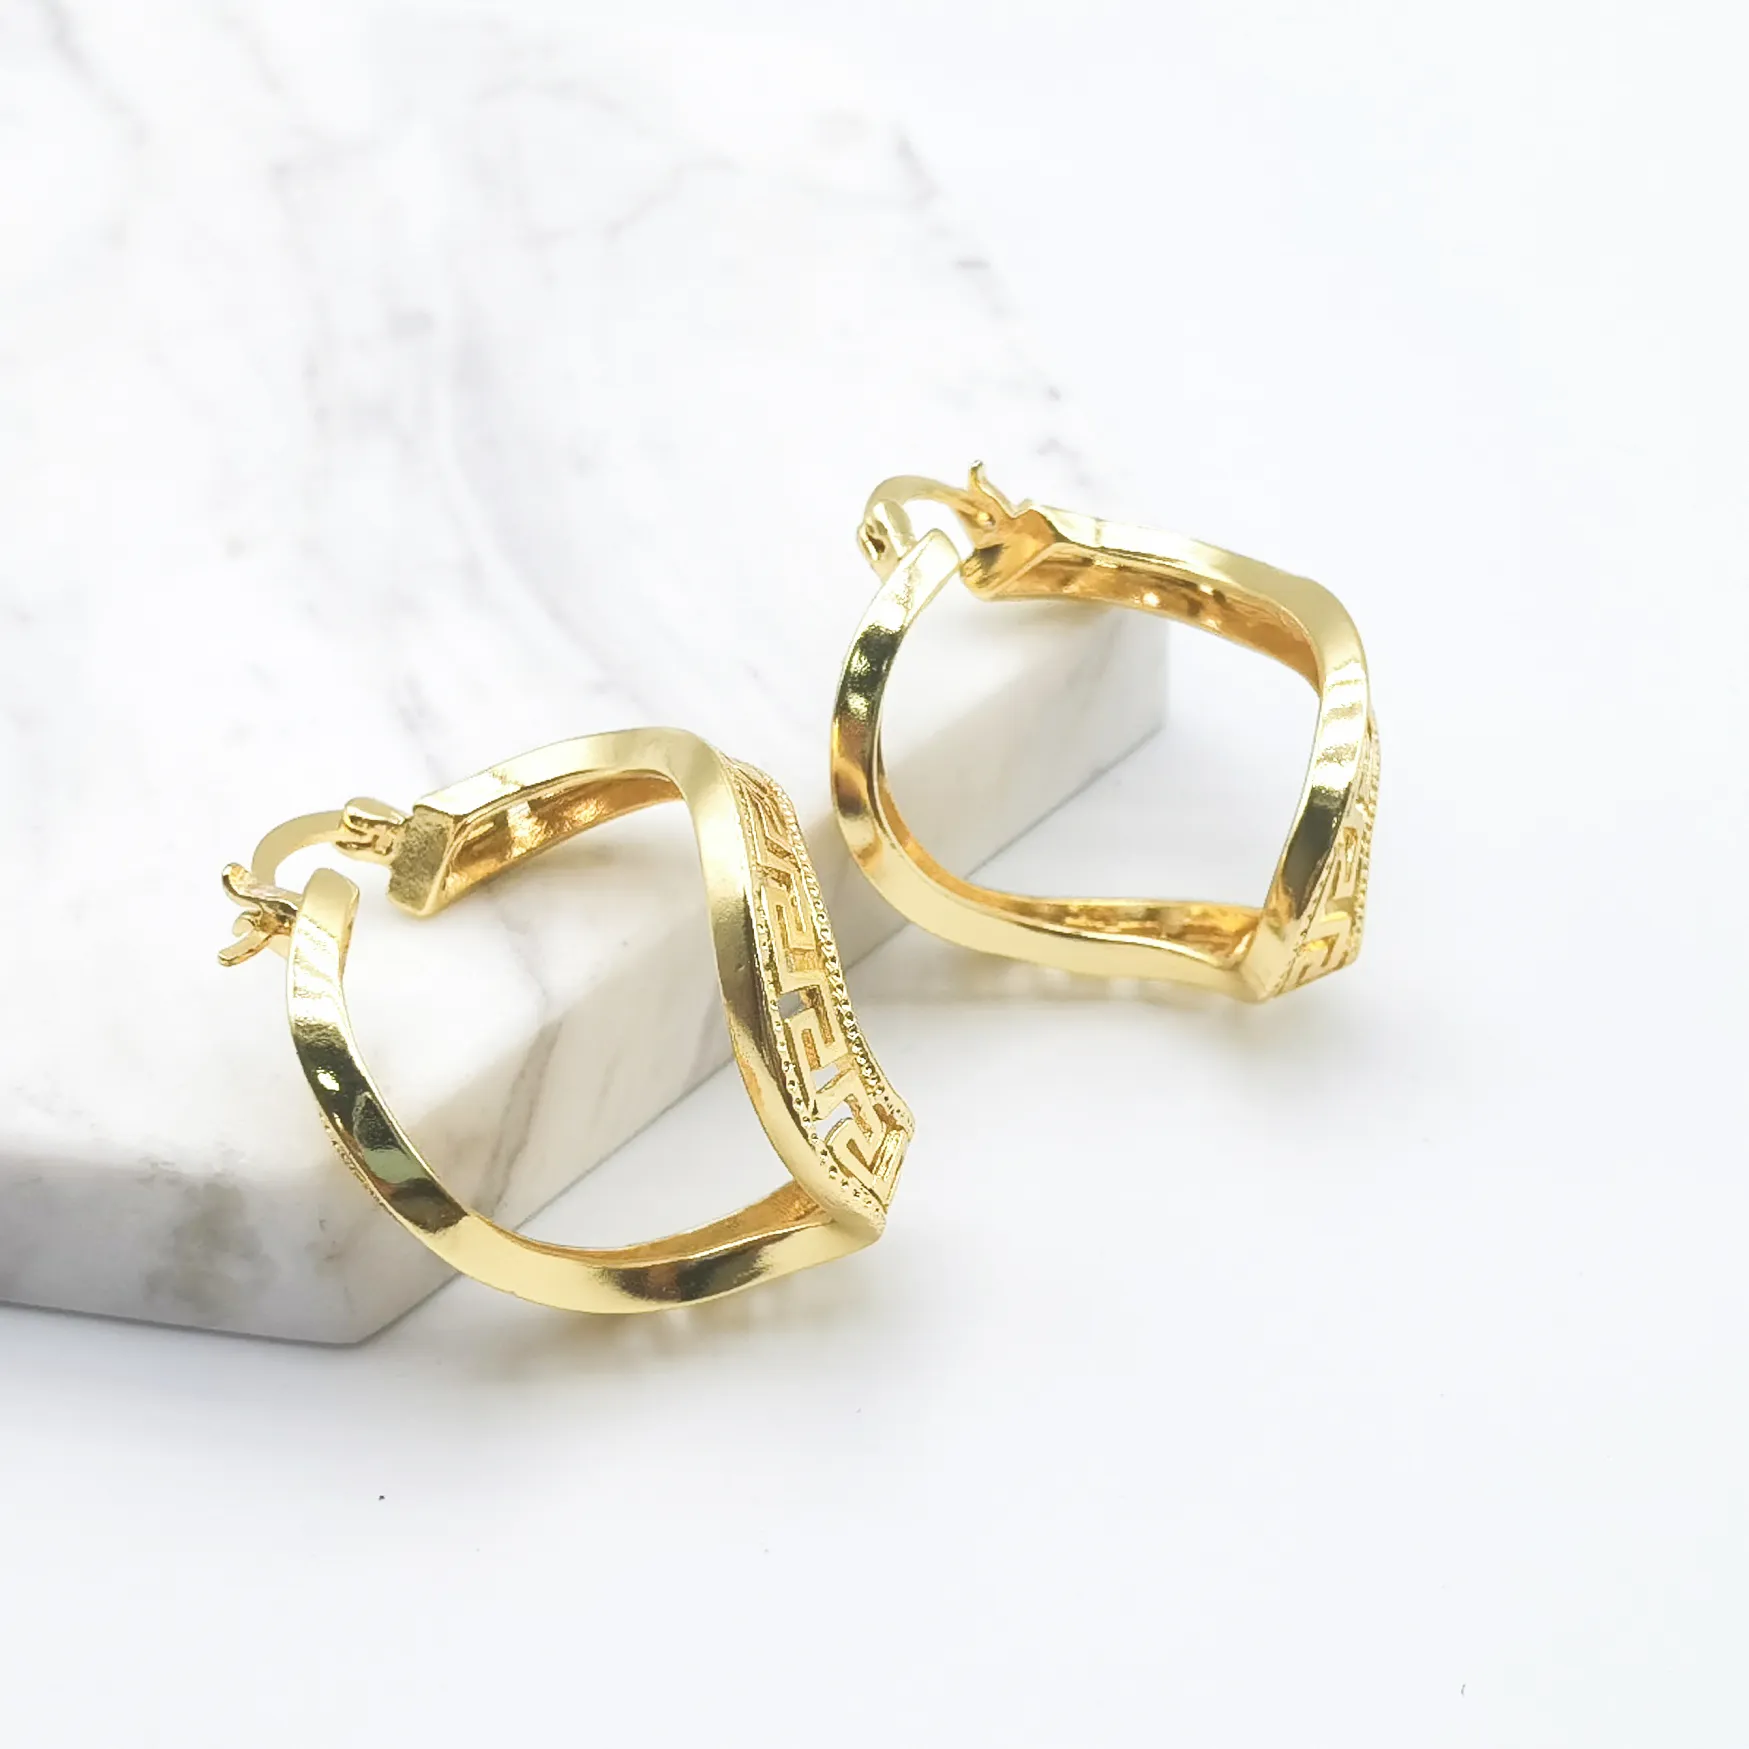 Dubai Indian High Jewelry 18K Gold Plated Hoop Earrings, Women's Jewelry Brass Earrings Wholesale